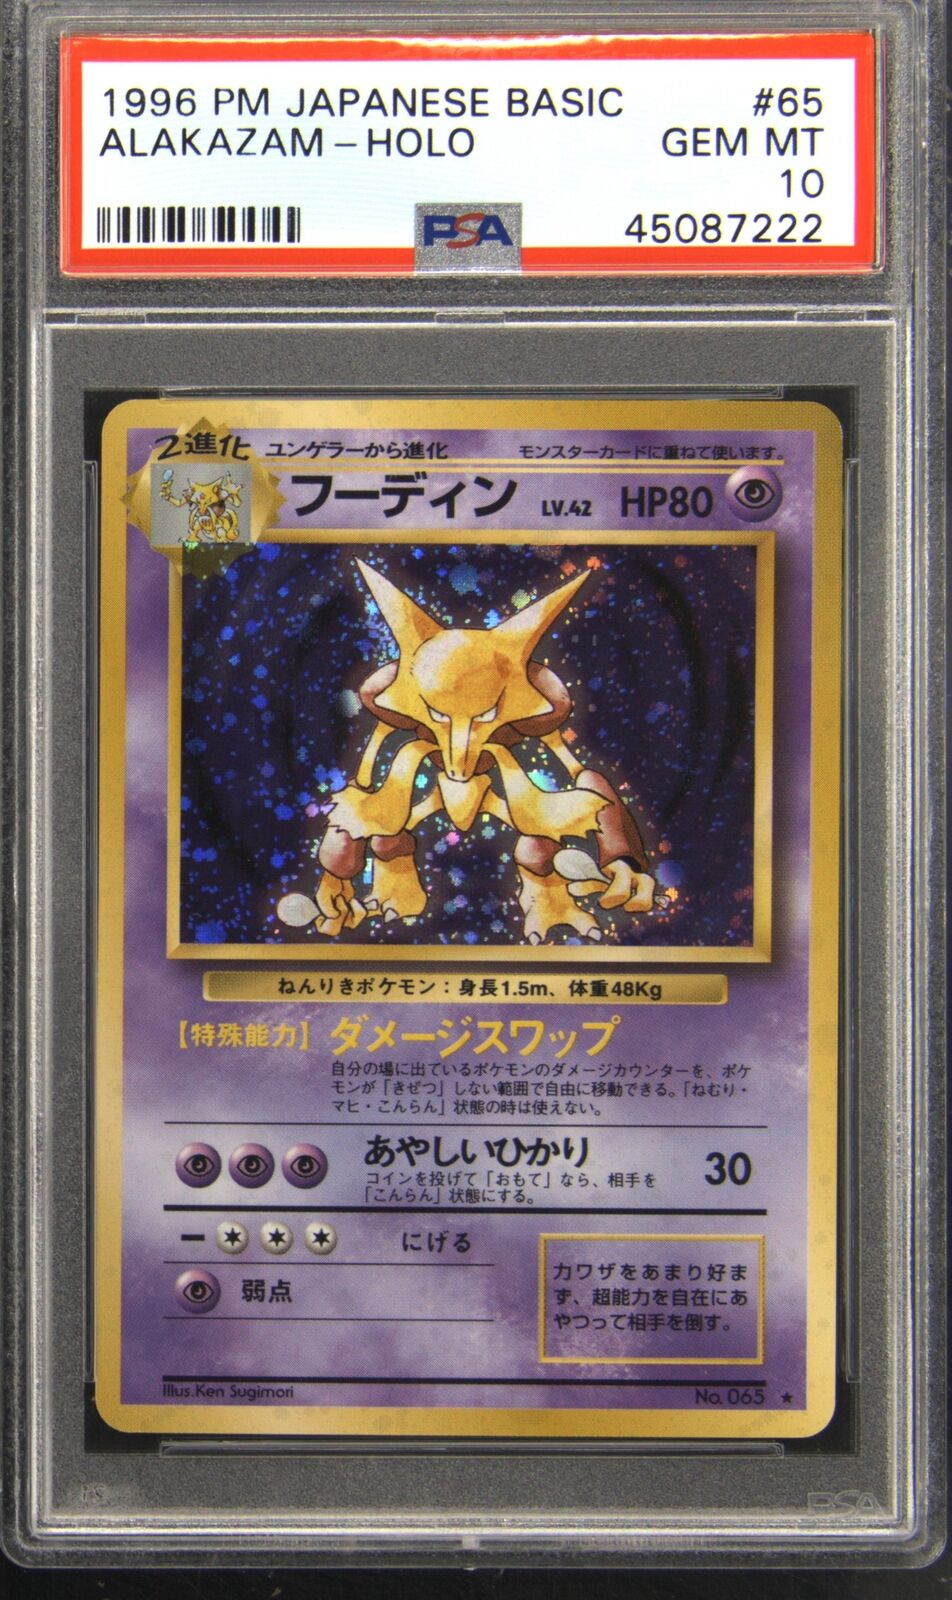 1996 Pokemon Japanese Basic 65 Alakazam Rare Holo Pokemon TCG Card PSA 10